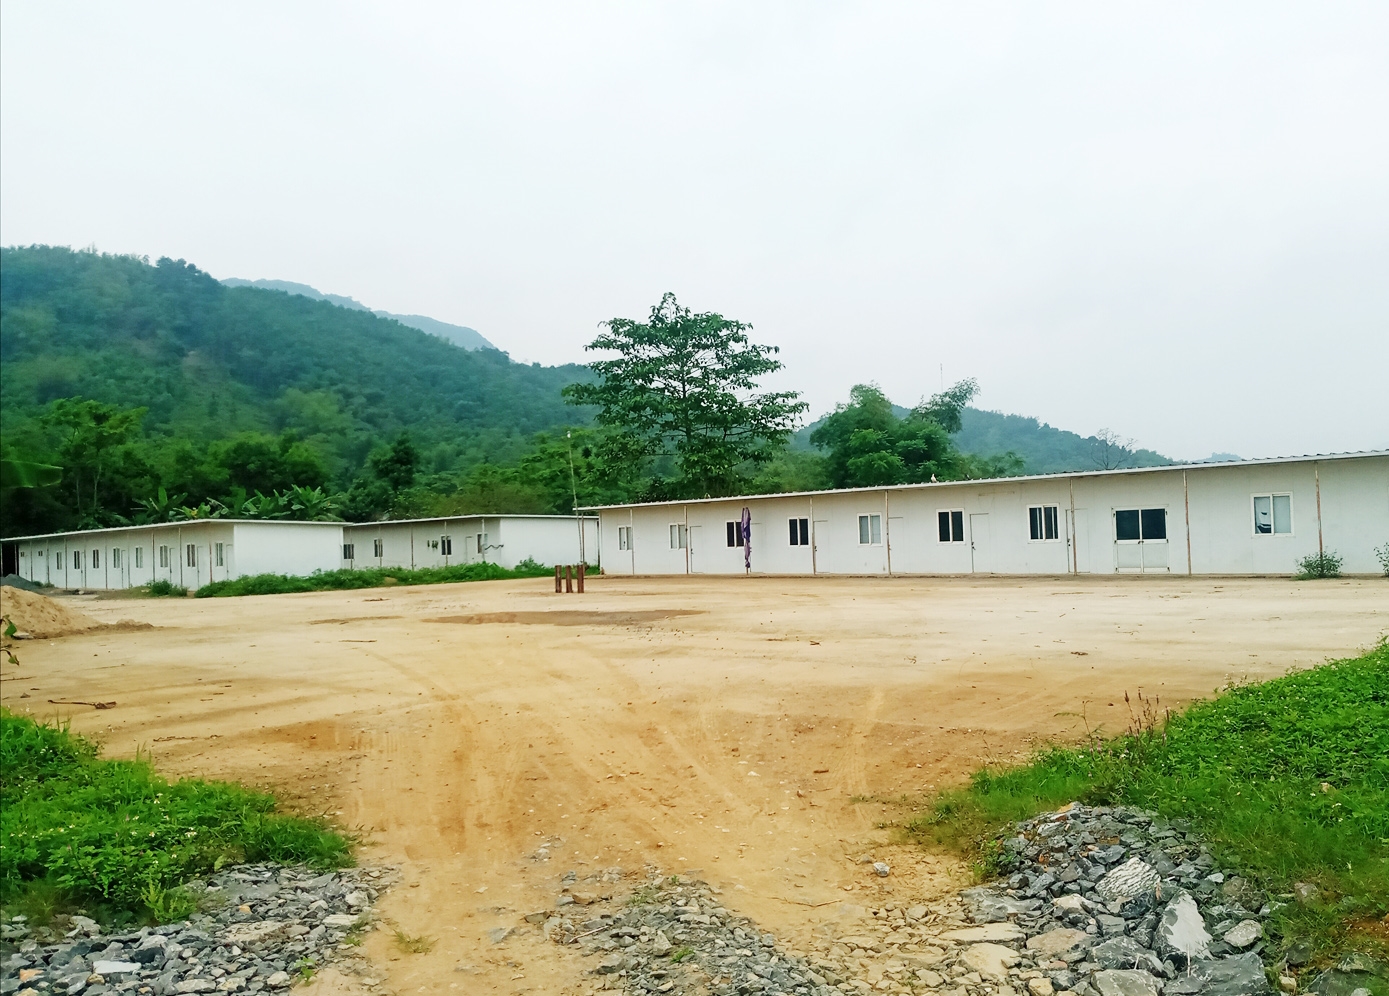 Dự án xây dựng nhà máy xi măng Thanh Sơn, xã Thúy Sơn, huyện miền núi Ngọc Lặc, tỉnh Thanh Hóa đã ngừng thi công hơn 10 năm nay